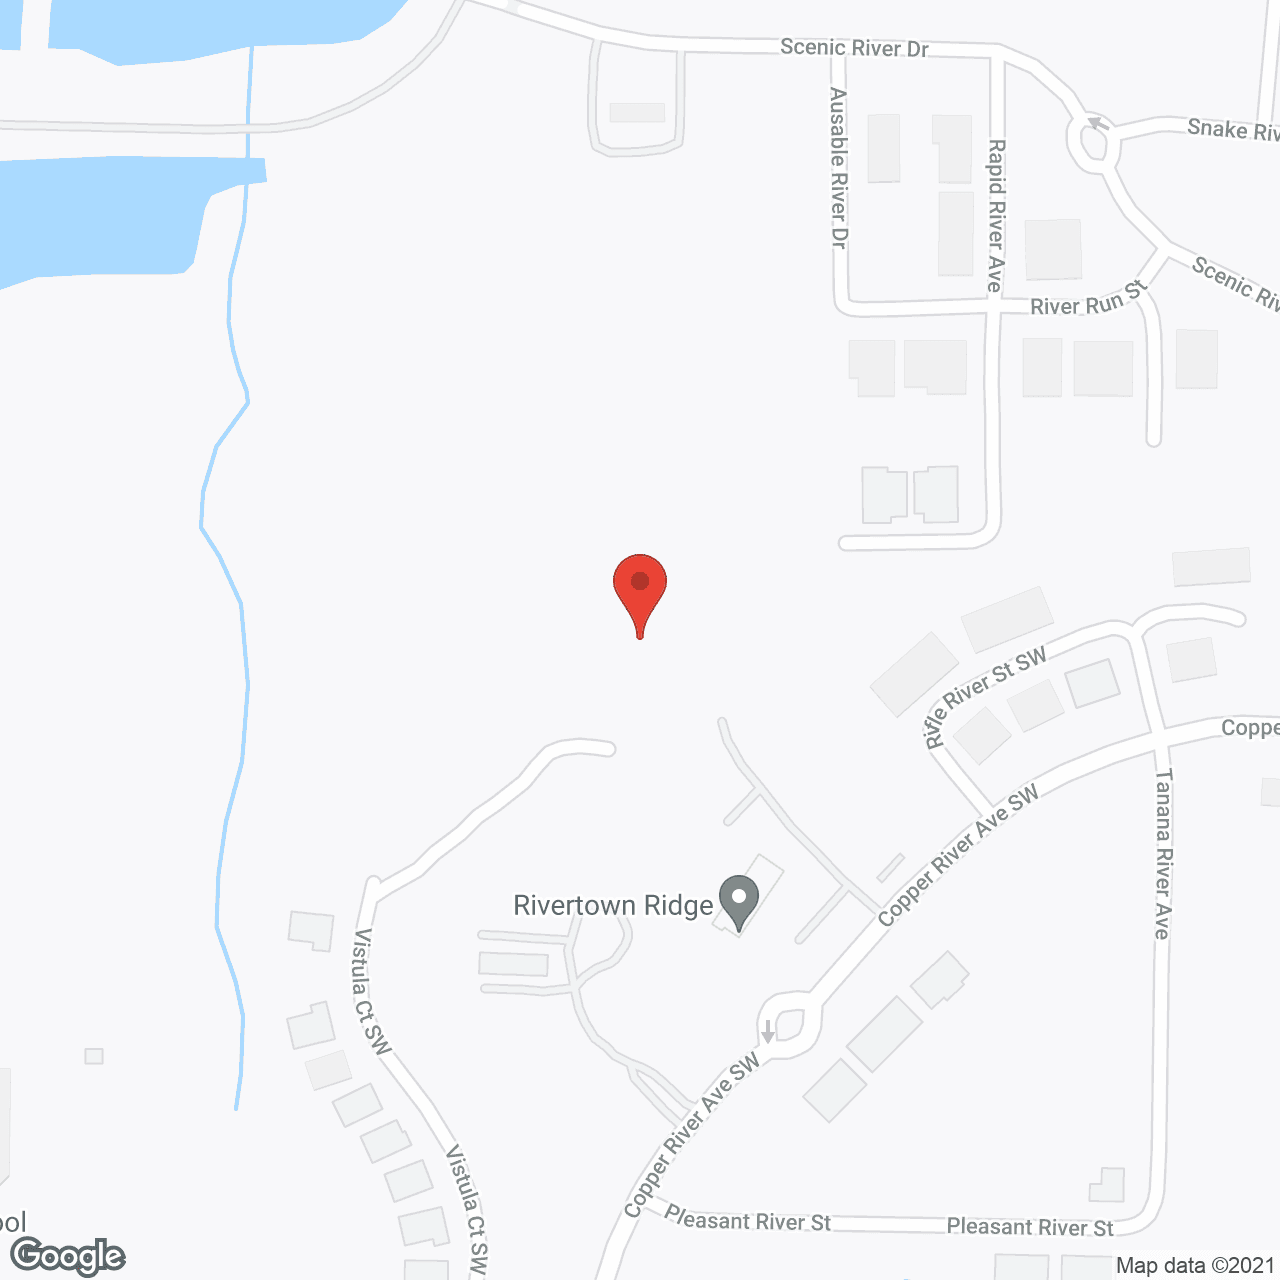 Rivertown Ridge in google map